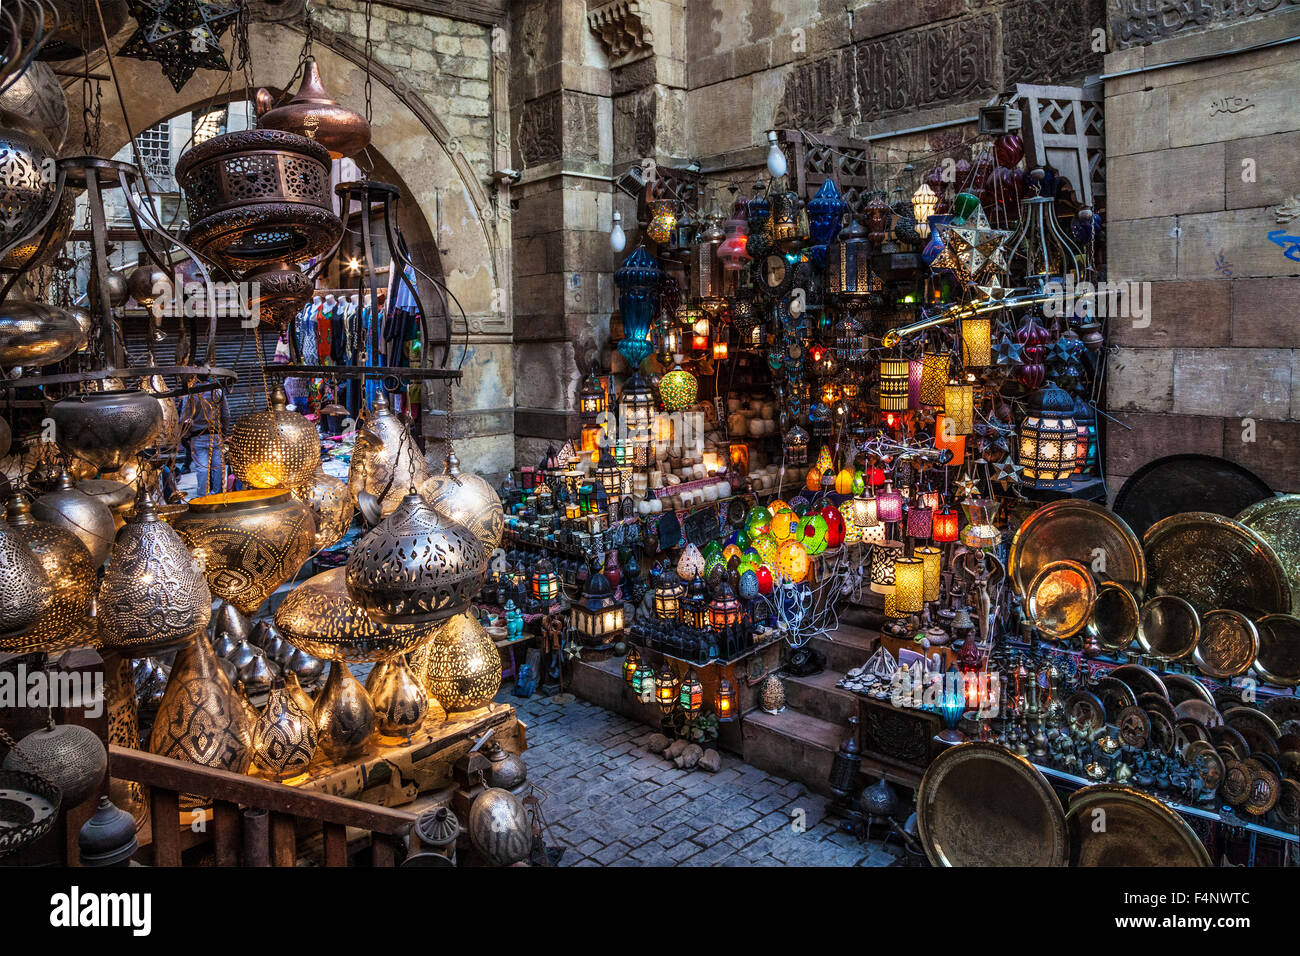 Traditionelle arabische Laternen und Lampen im Souk Khan el-Khalili in Kairo  Stockfotografie - Alamy